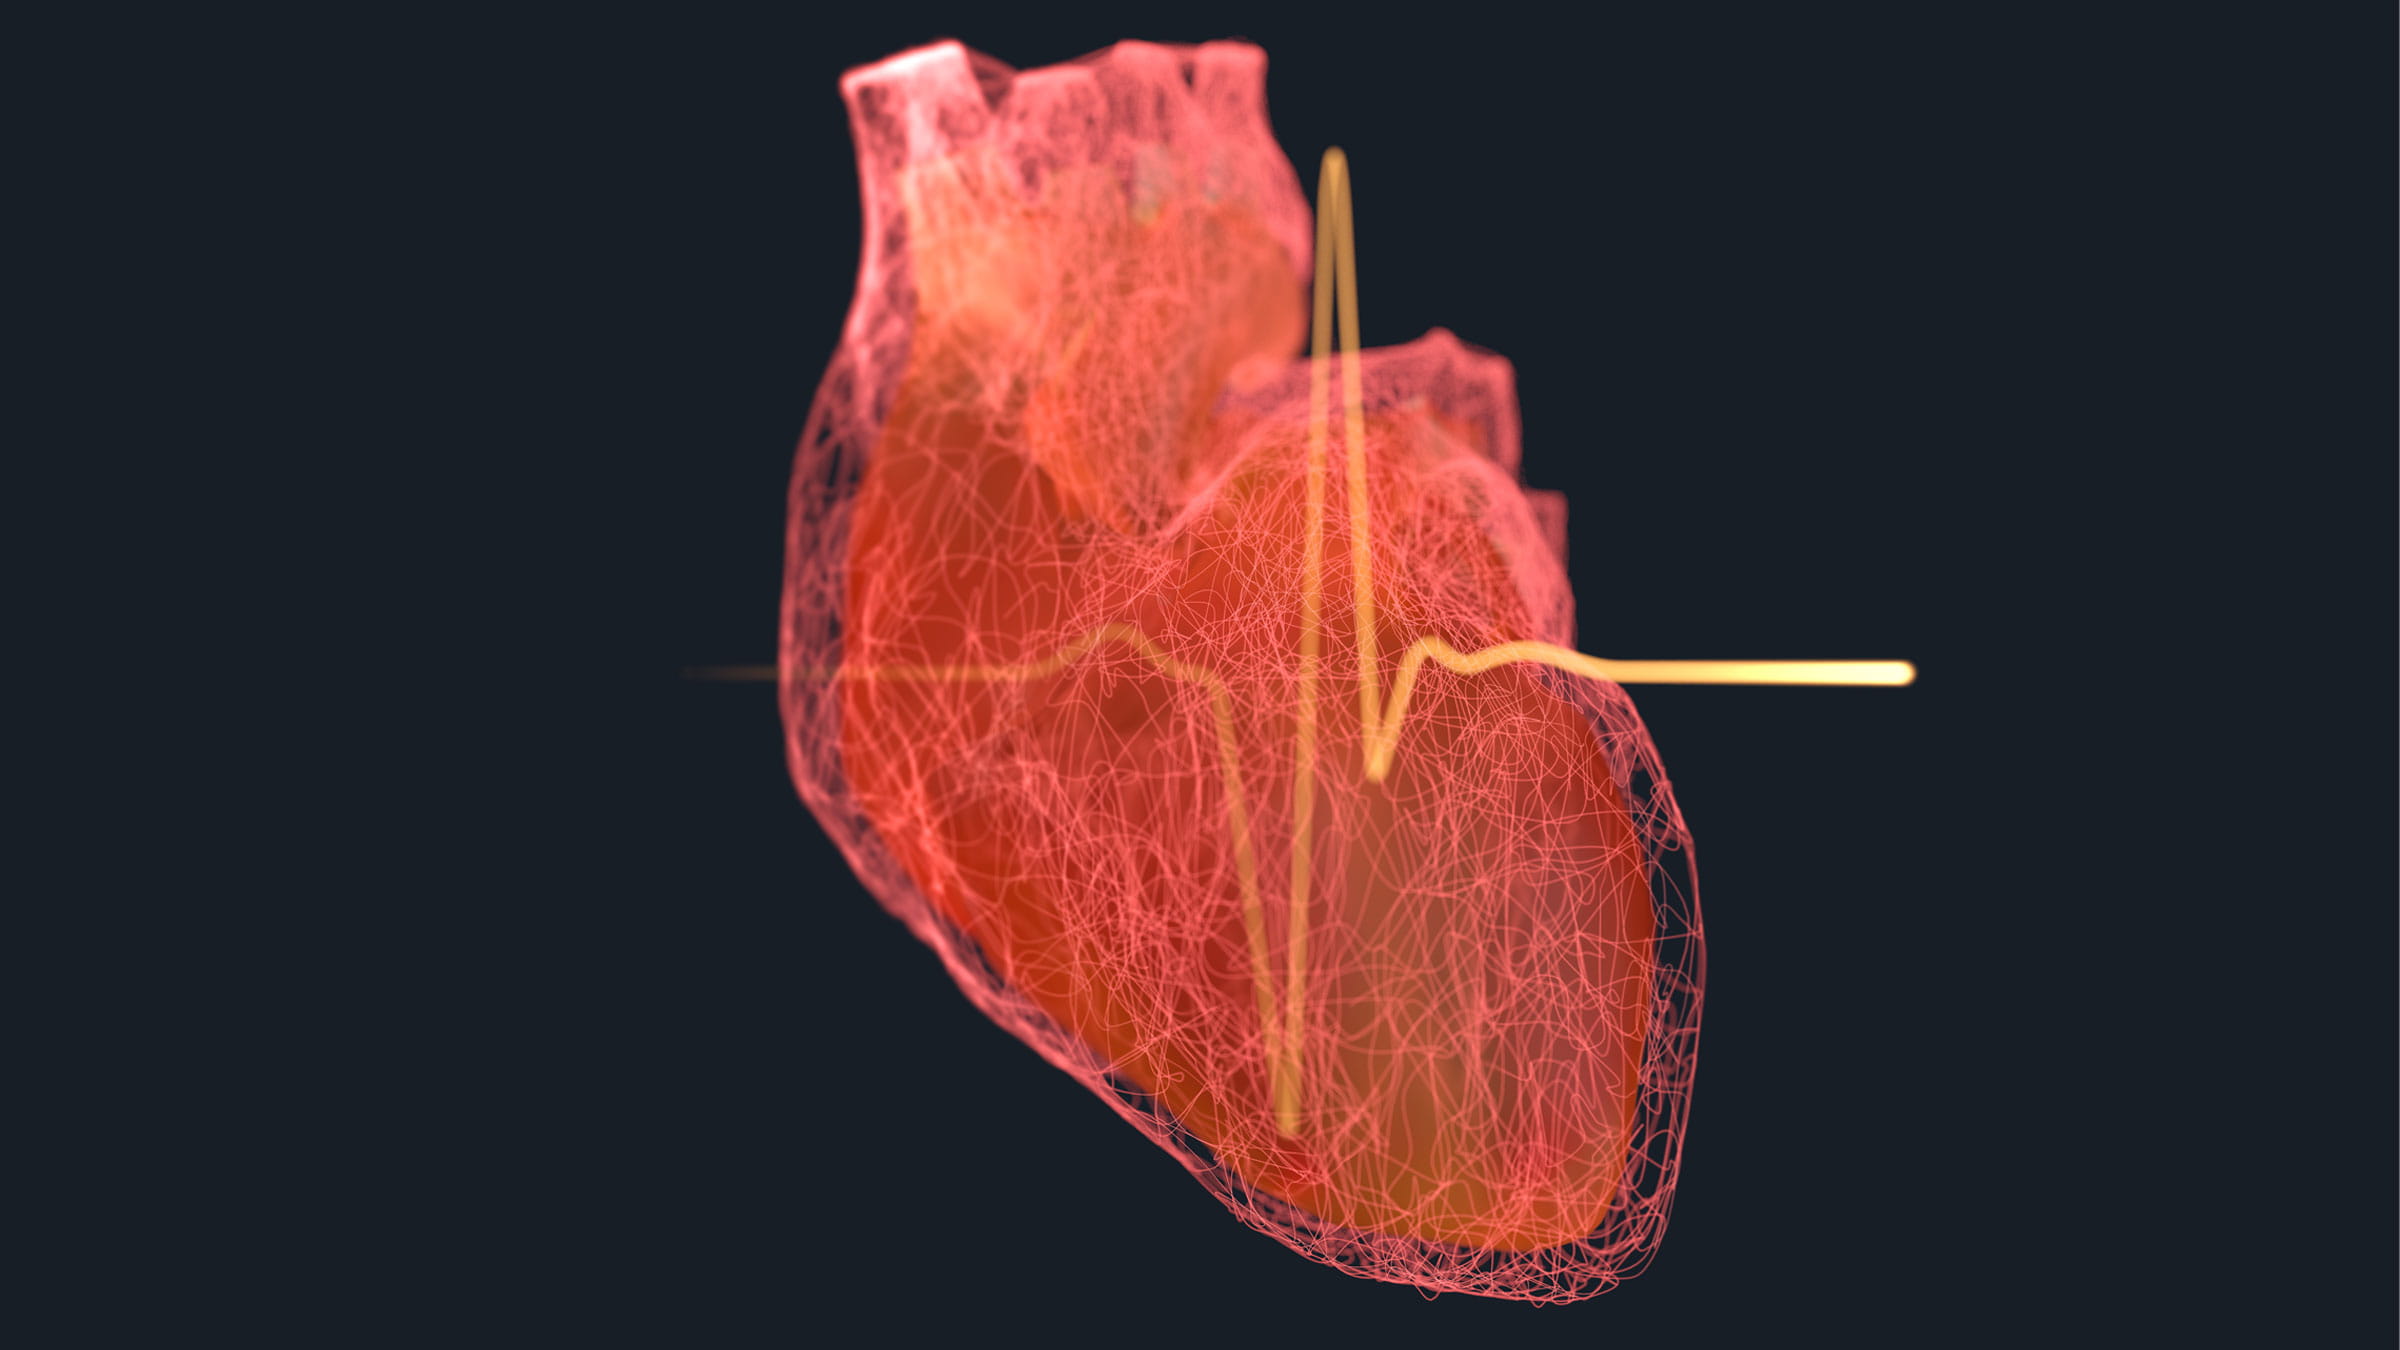 كيف يمكن قراءة تخطيط القلب